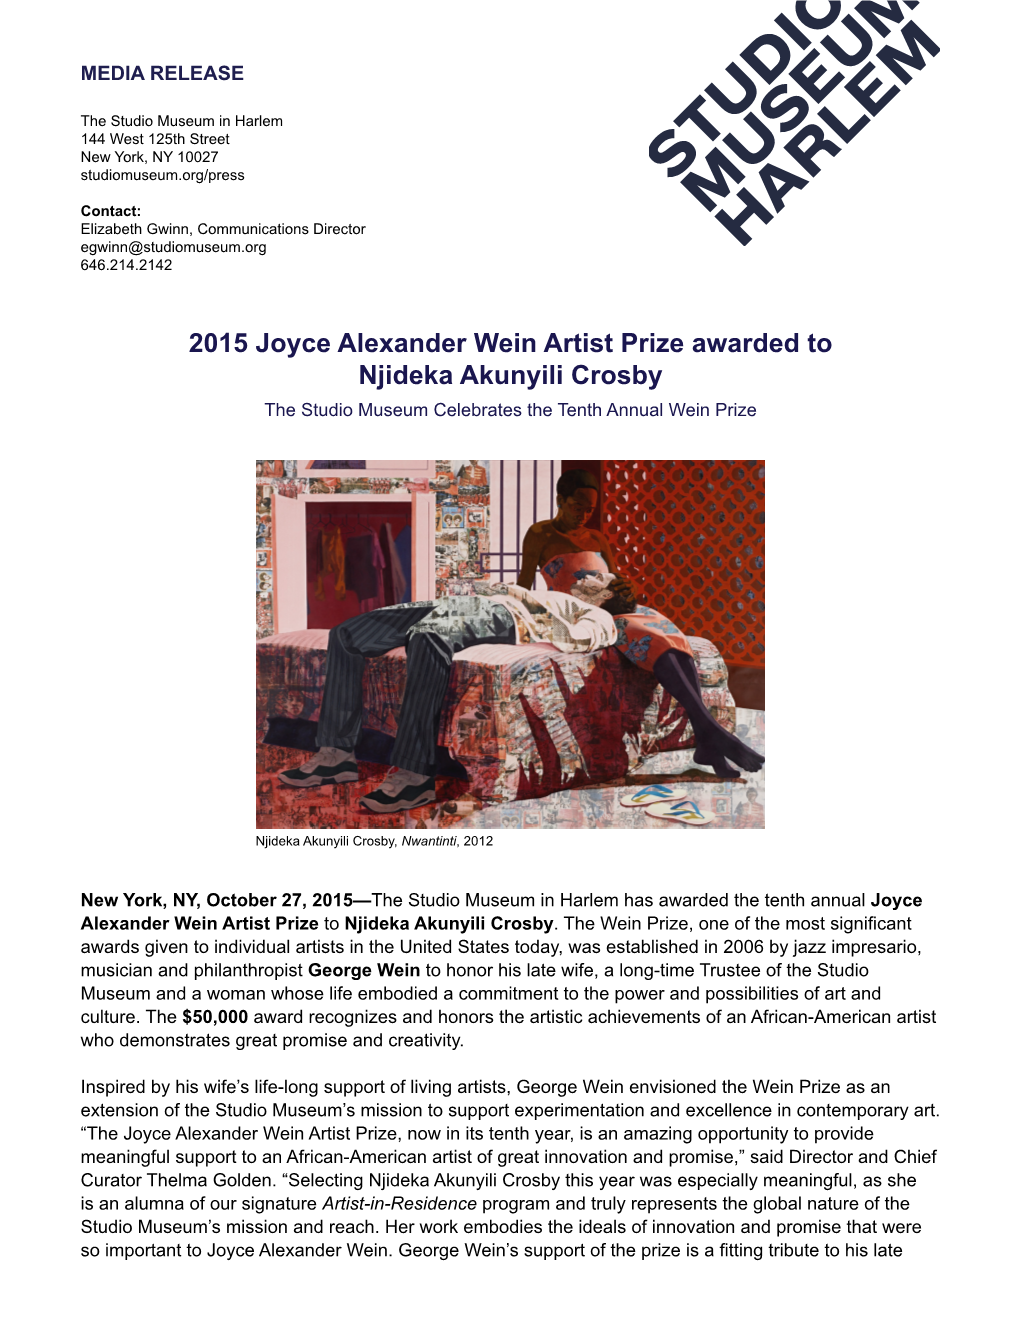 2015 Joyce Alexander Wein Artist Prize Awarded to Njideka Akunyili Crosby the Studio Museum Celebrates the Tenth Annual Wein Prize